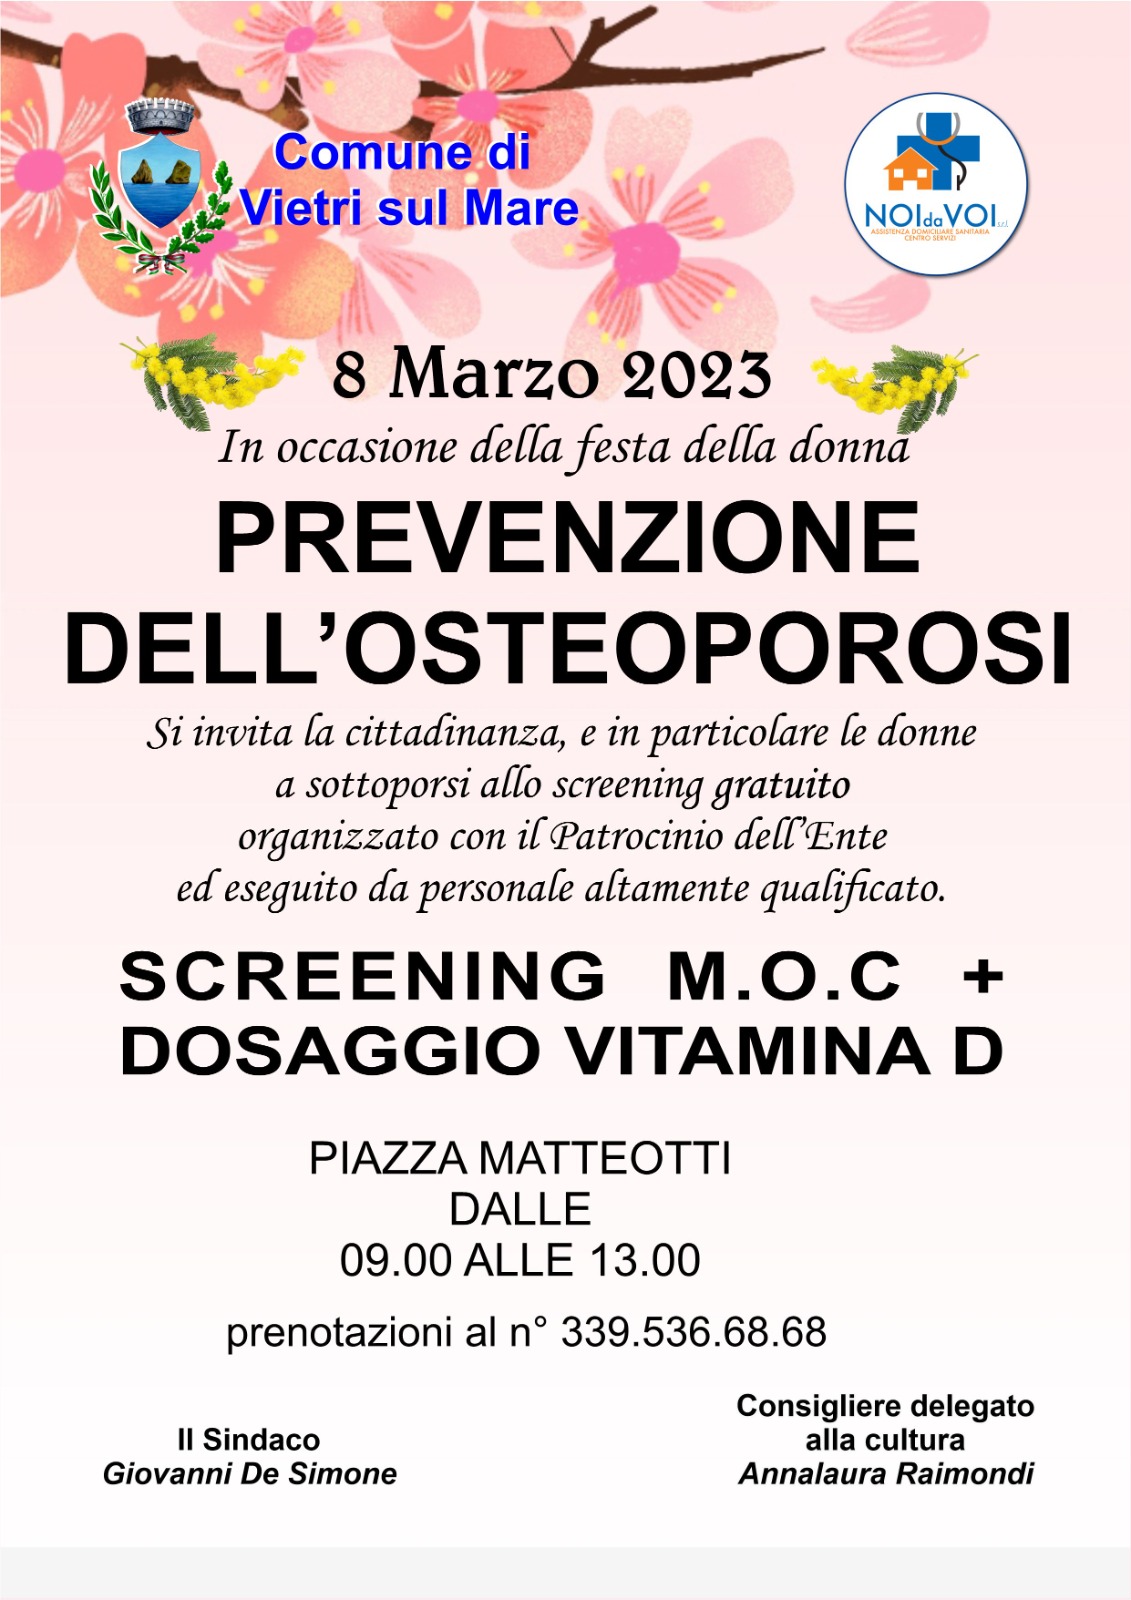 Vietri sul Mare: 8 Marzo, screening gratuito per prevenzione osteoporosi